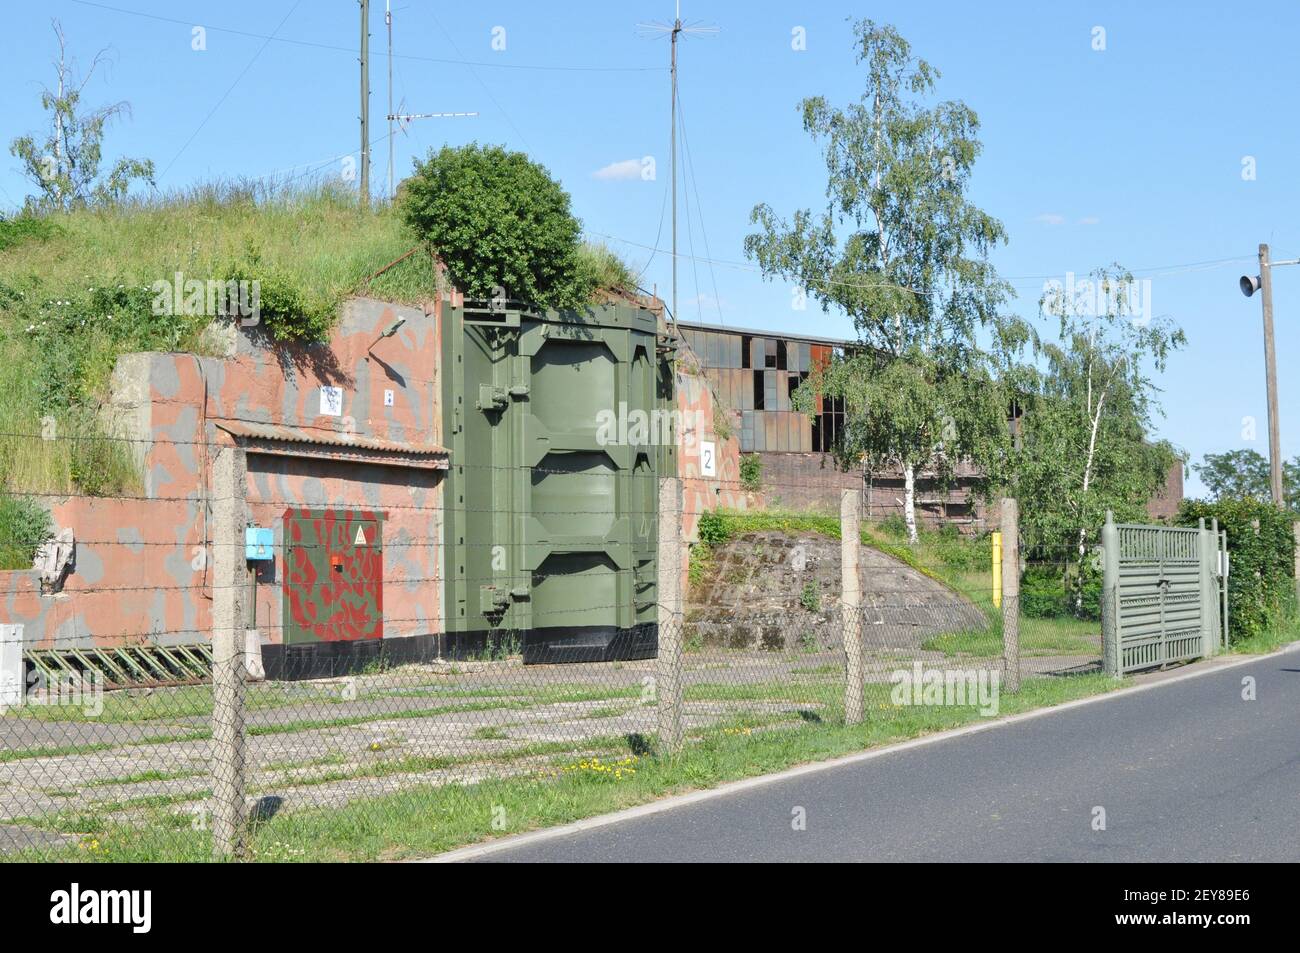 ehemalige Sonderwaffenlager (Bunker Granit Typ 1) für atomare Kernwaffen (Atombombe) auf dem Flugplatz Großenhain am 6.6.2016 Stock Photo